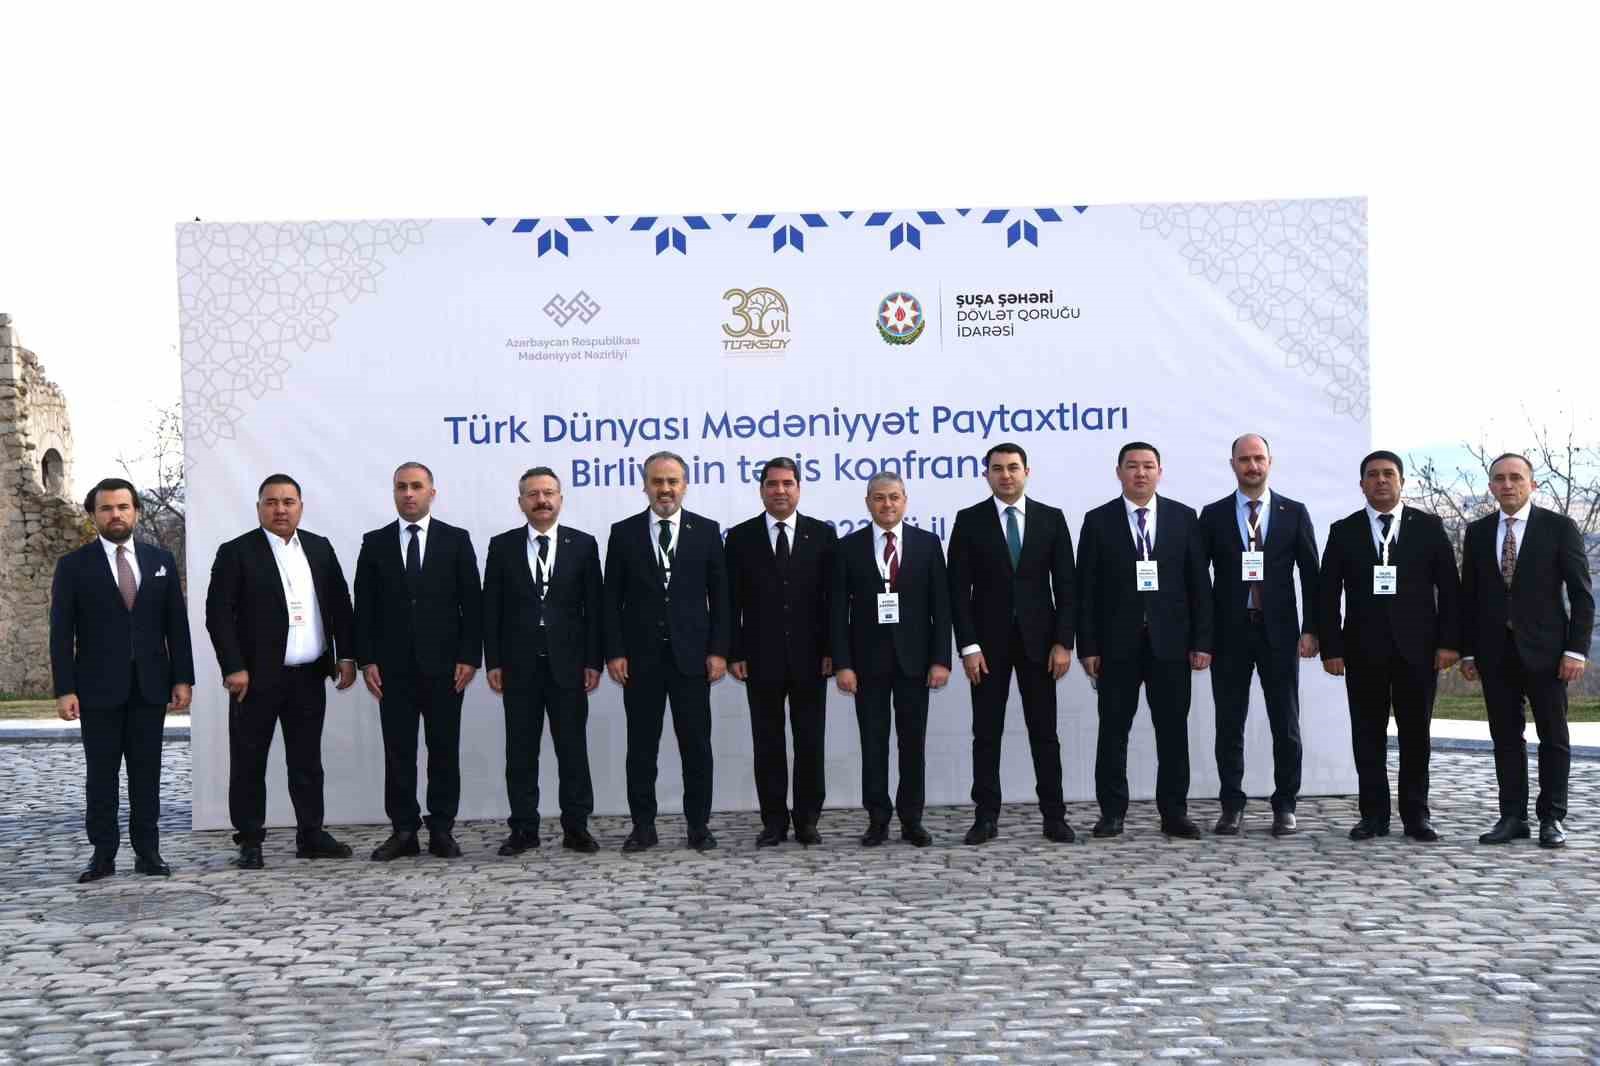 Türk Dünyasından Bursaya Önemli Bir Görev